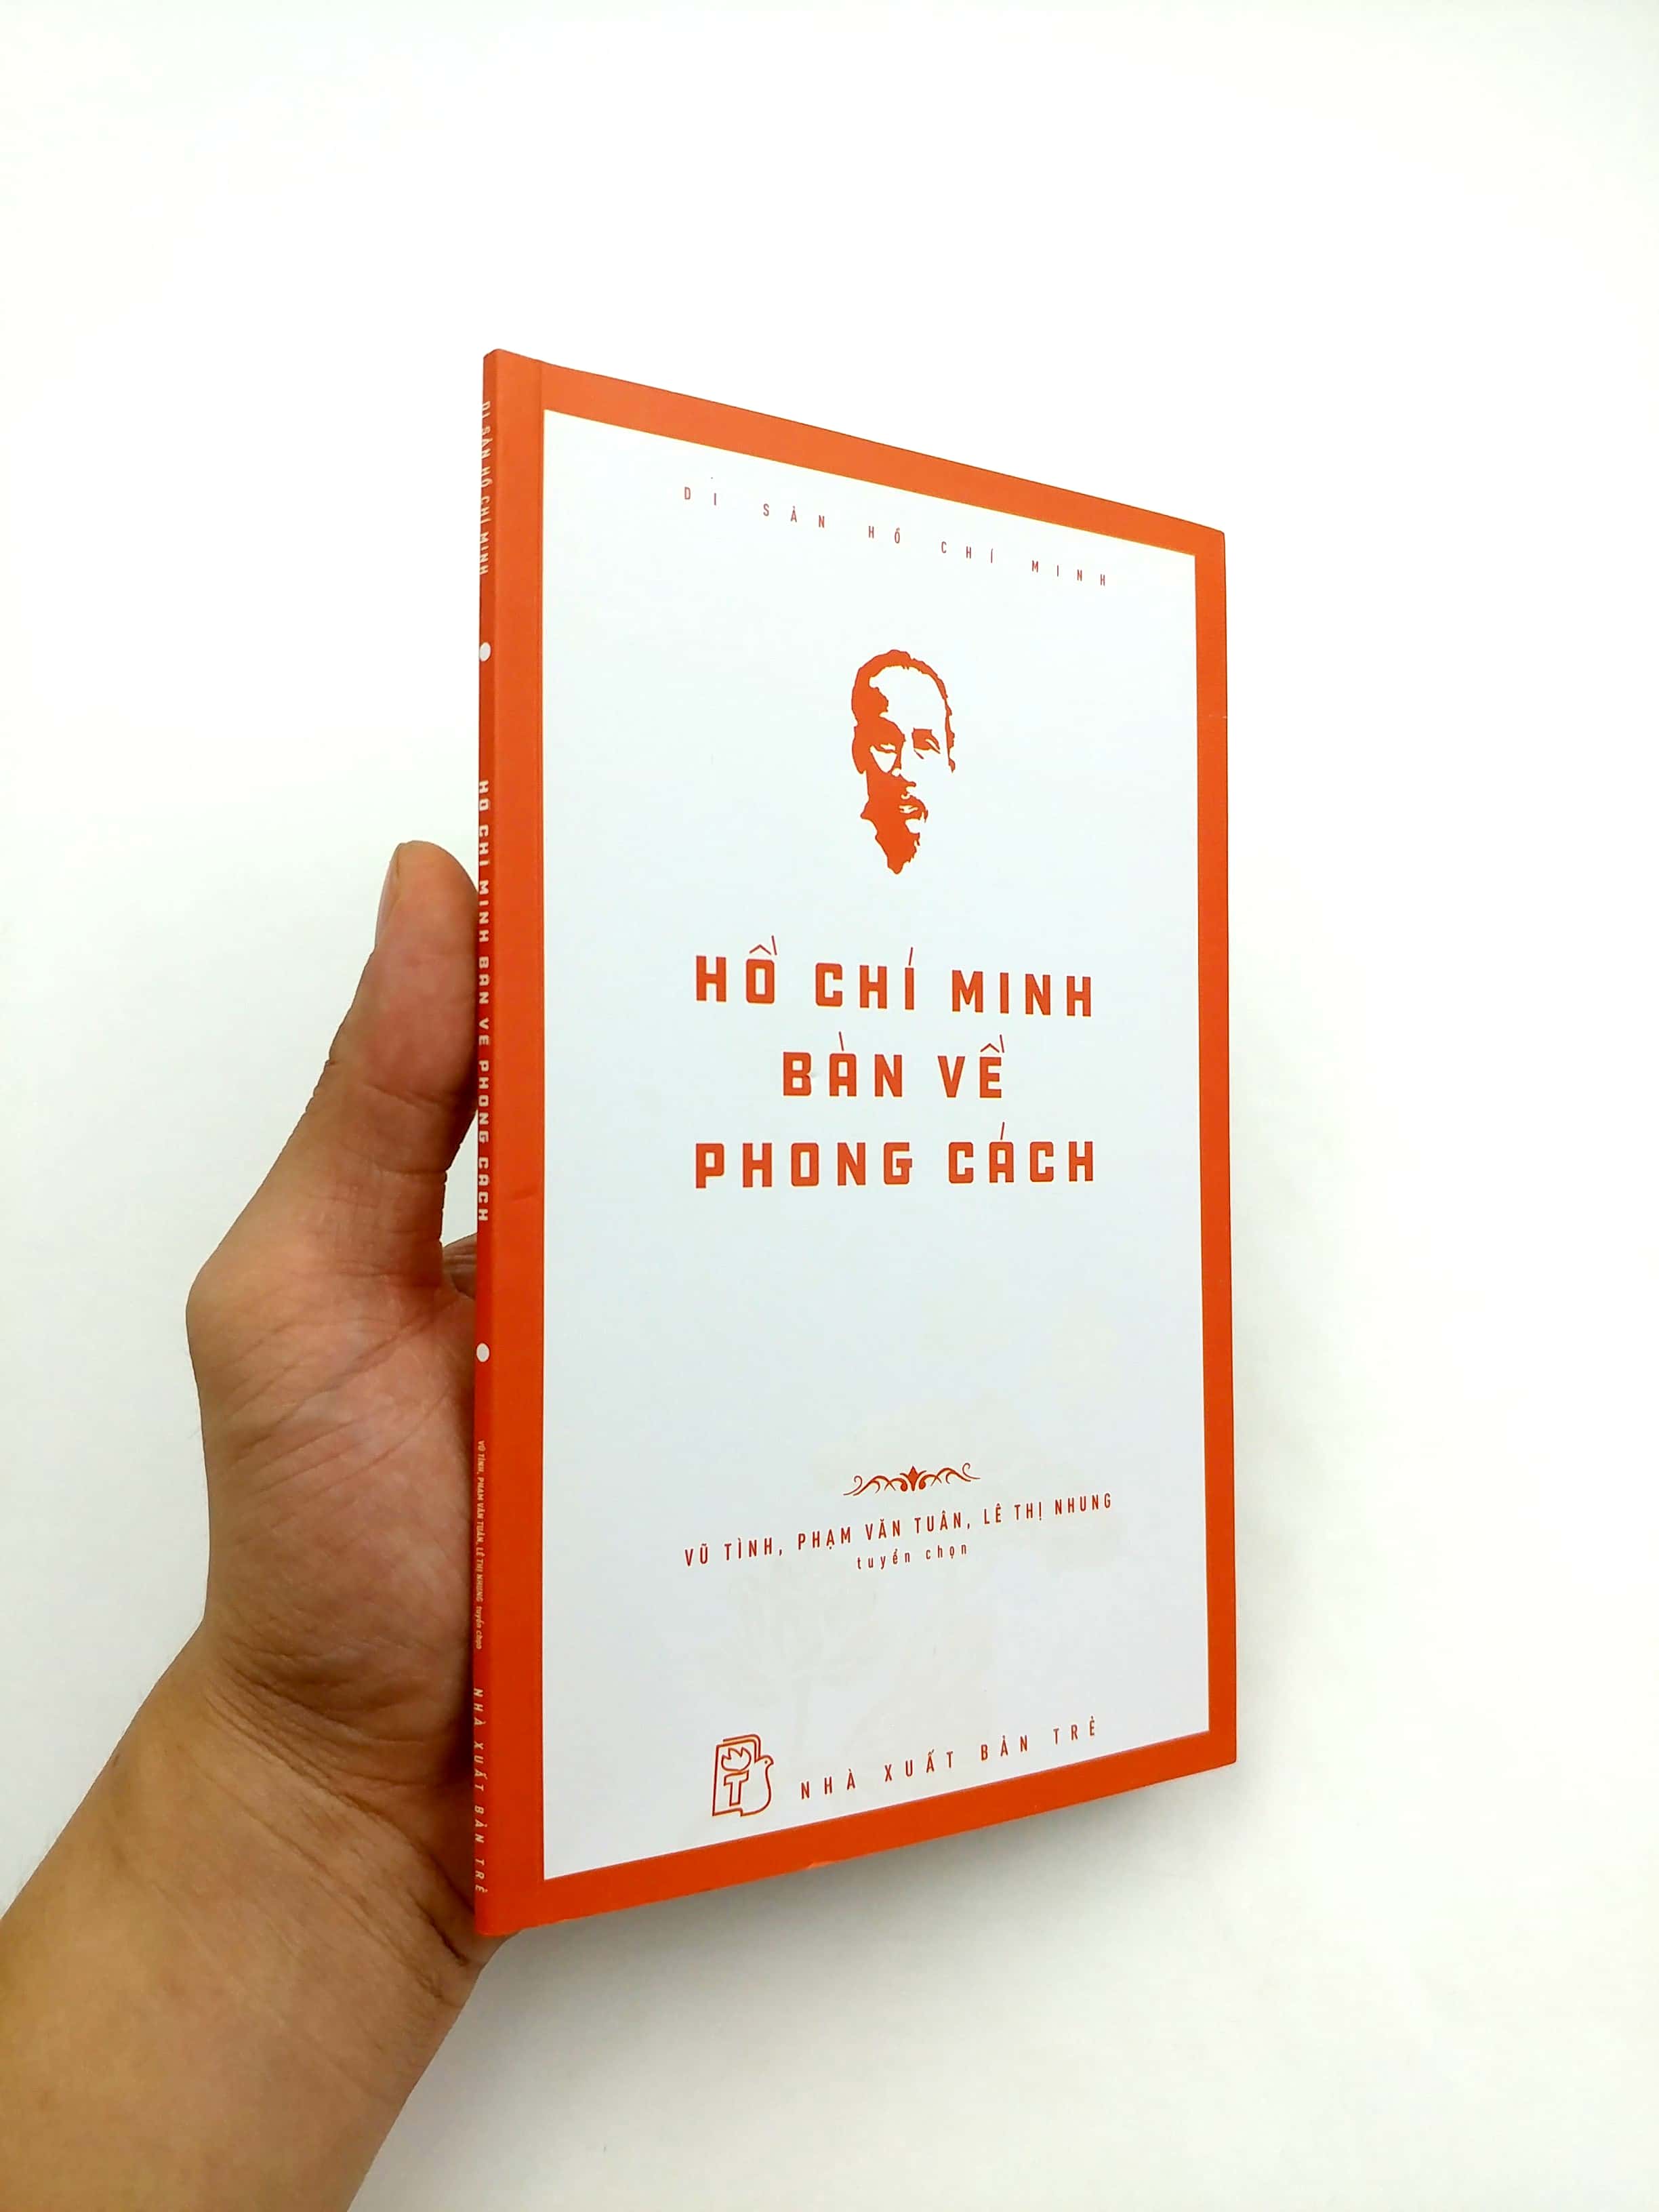 Di Sản Hồ Chí Minh - Hồ Chí Minh Bàn Về Phong Cách PDF